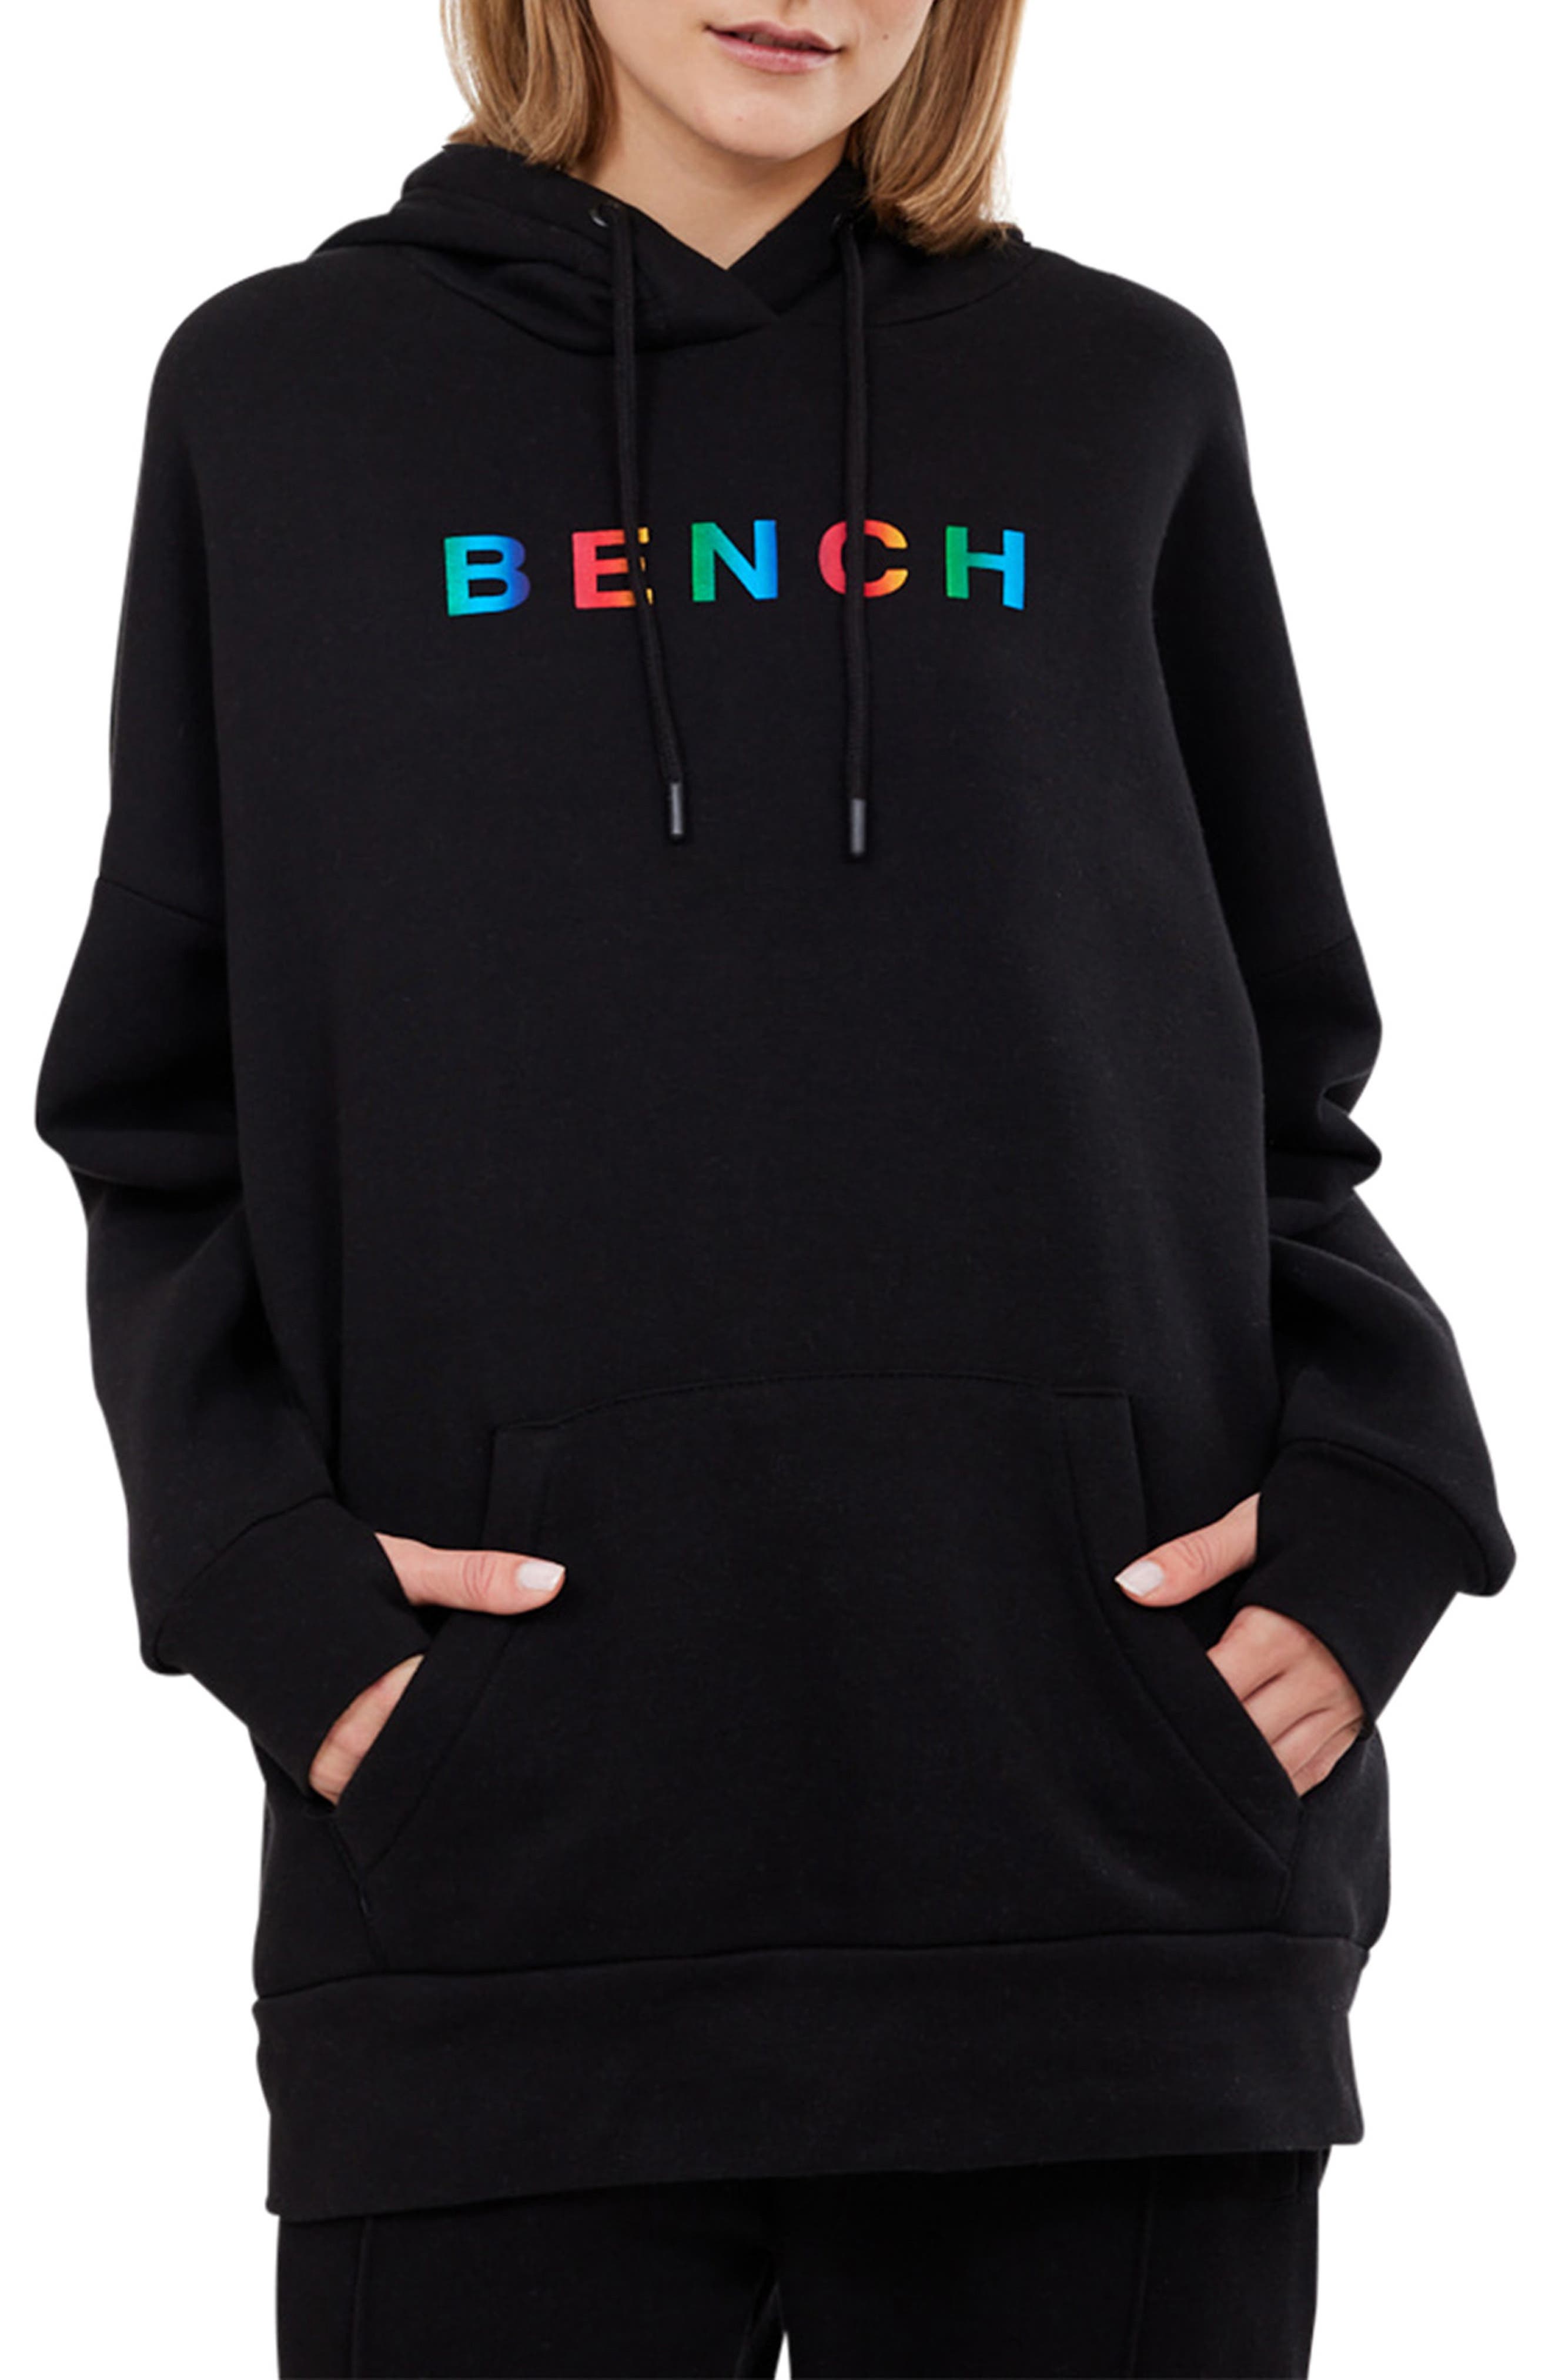 Пуловер с капюшоном Loxley с радужным логотипом Bench.